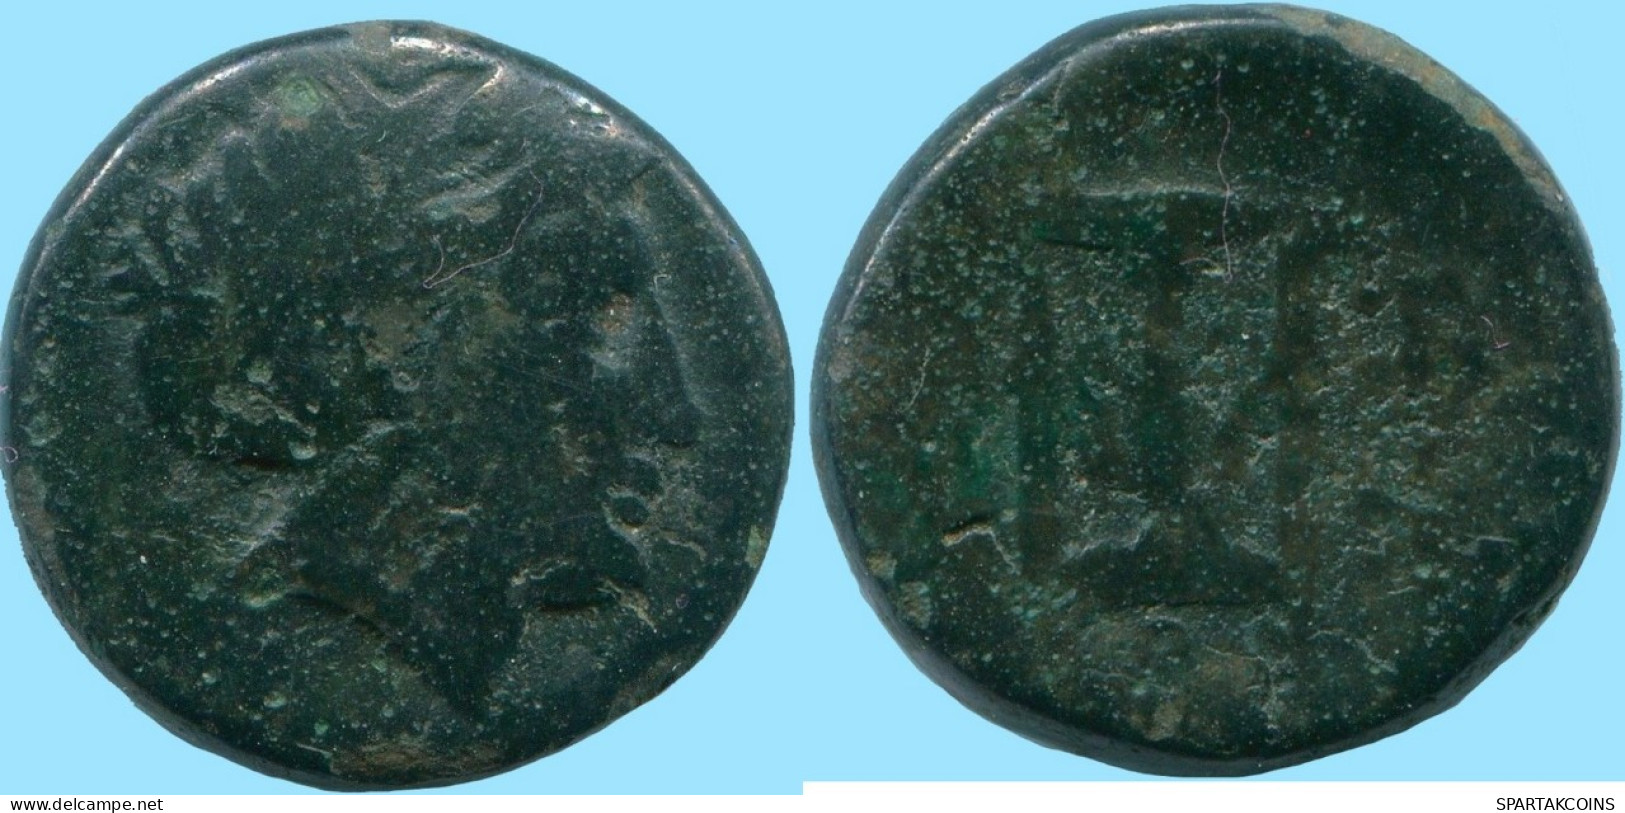 Auténtico Original GRIEGO ANTIGUO Moneda 6.36g/17.61mm #ANC13408.8.E.A - Greek